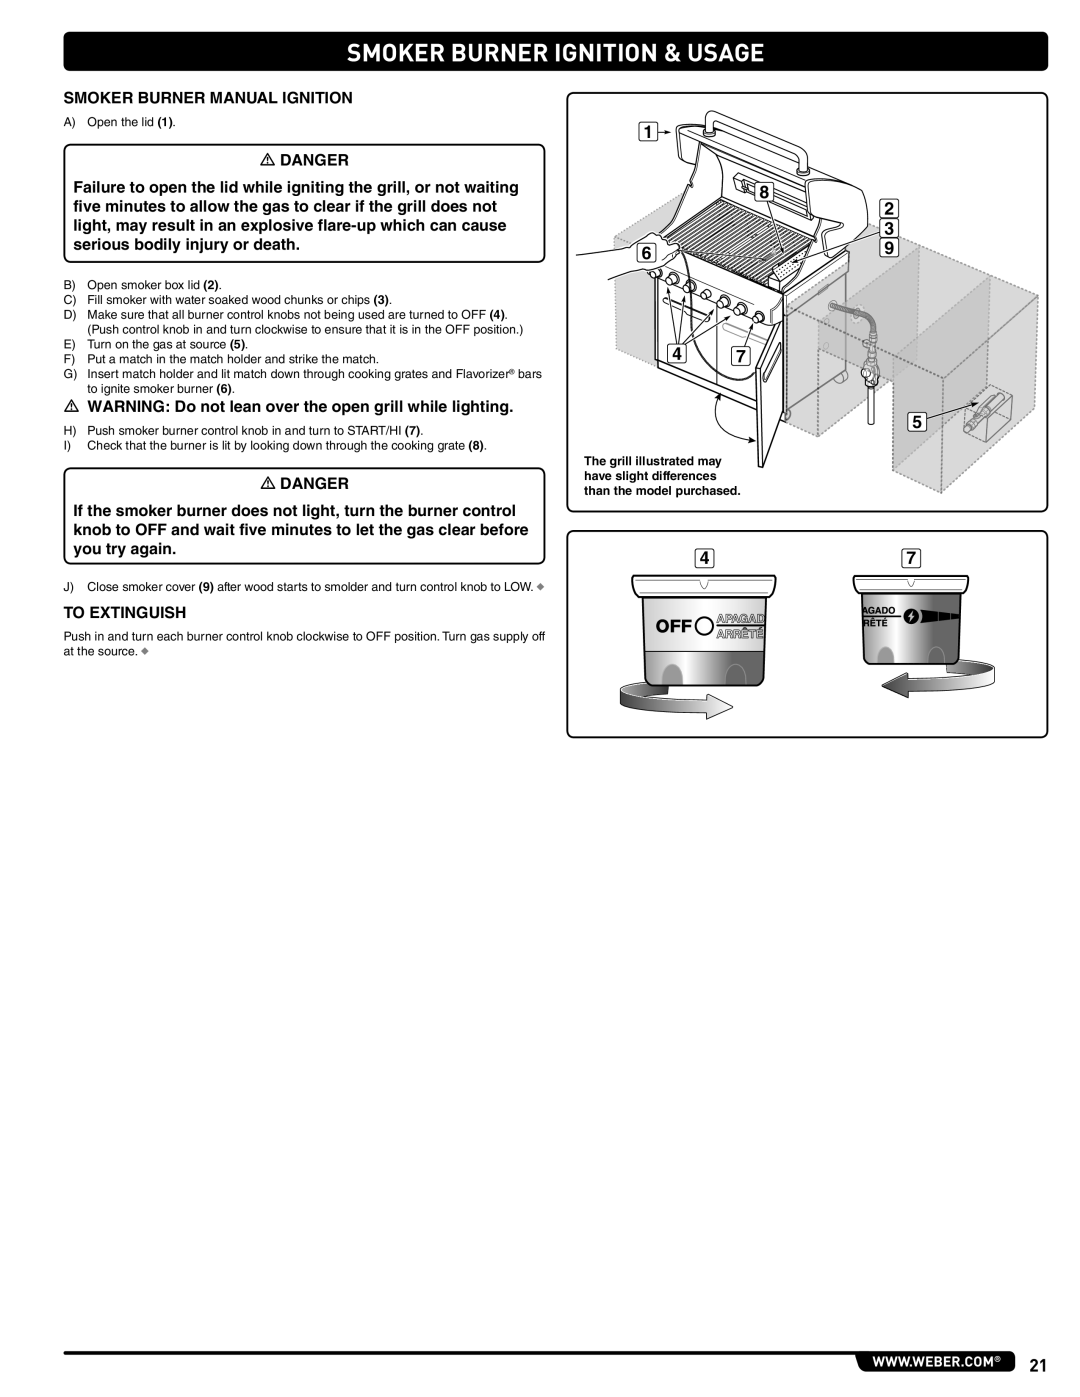 Weber 56576 manual Smoker Burner Ignition & Usage 